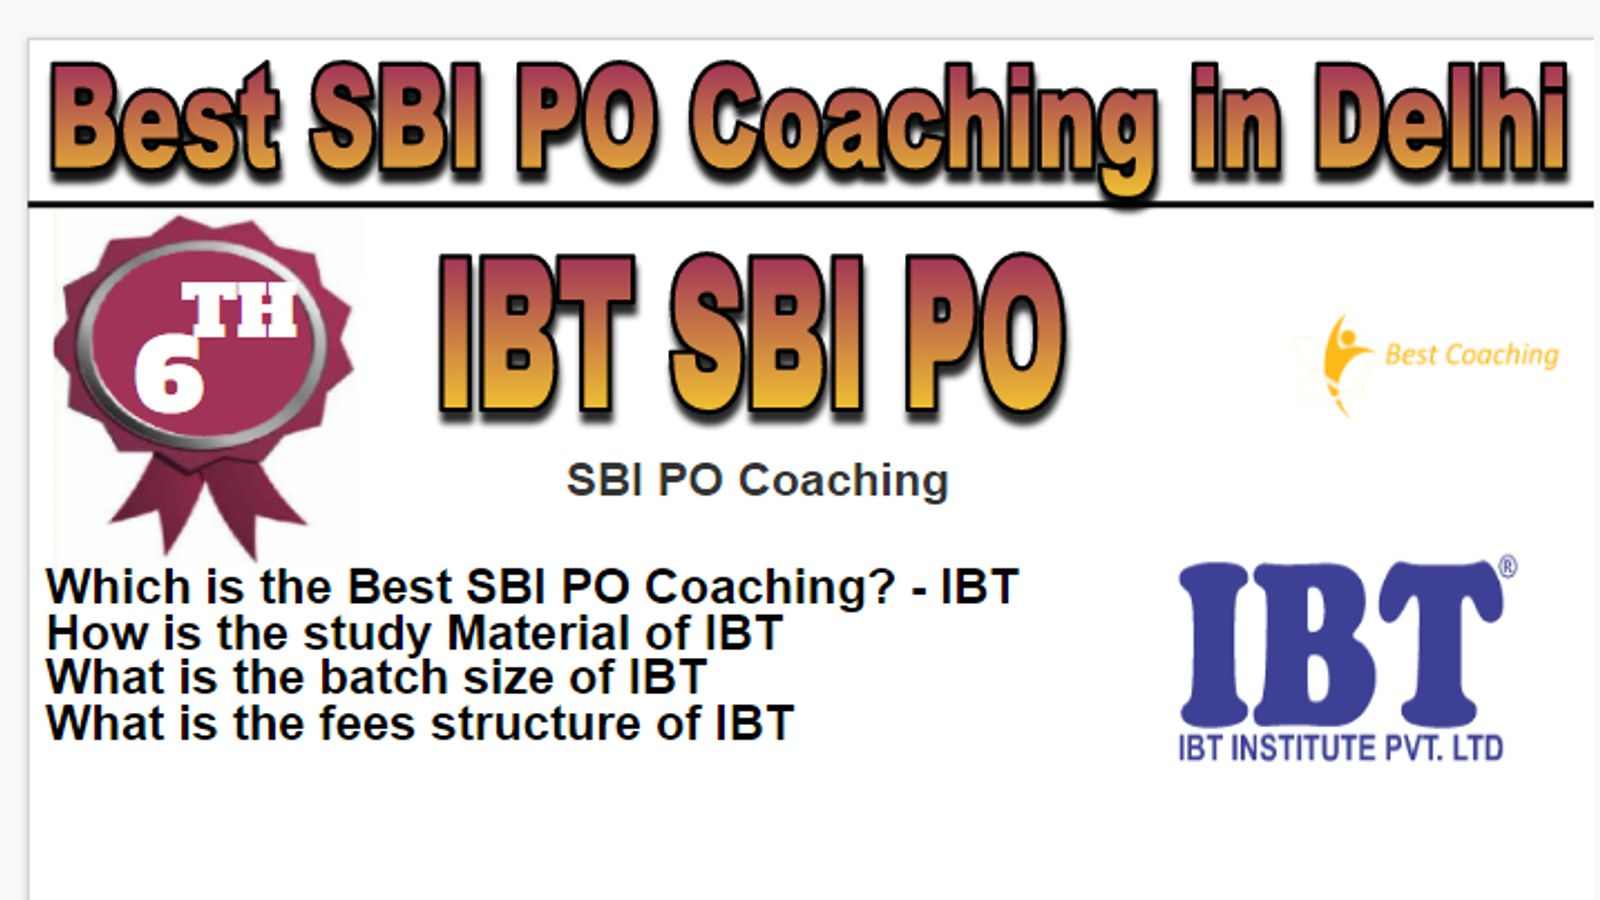 Rank 5 Best 10 SBI PO Coaching in Delhi